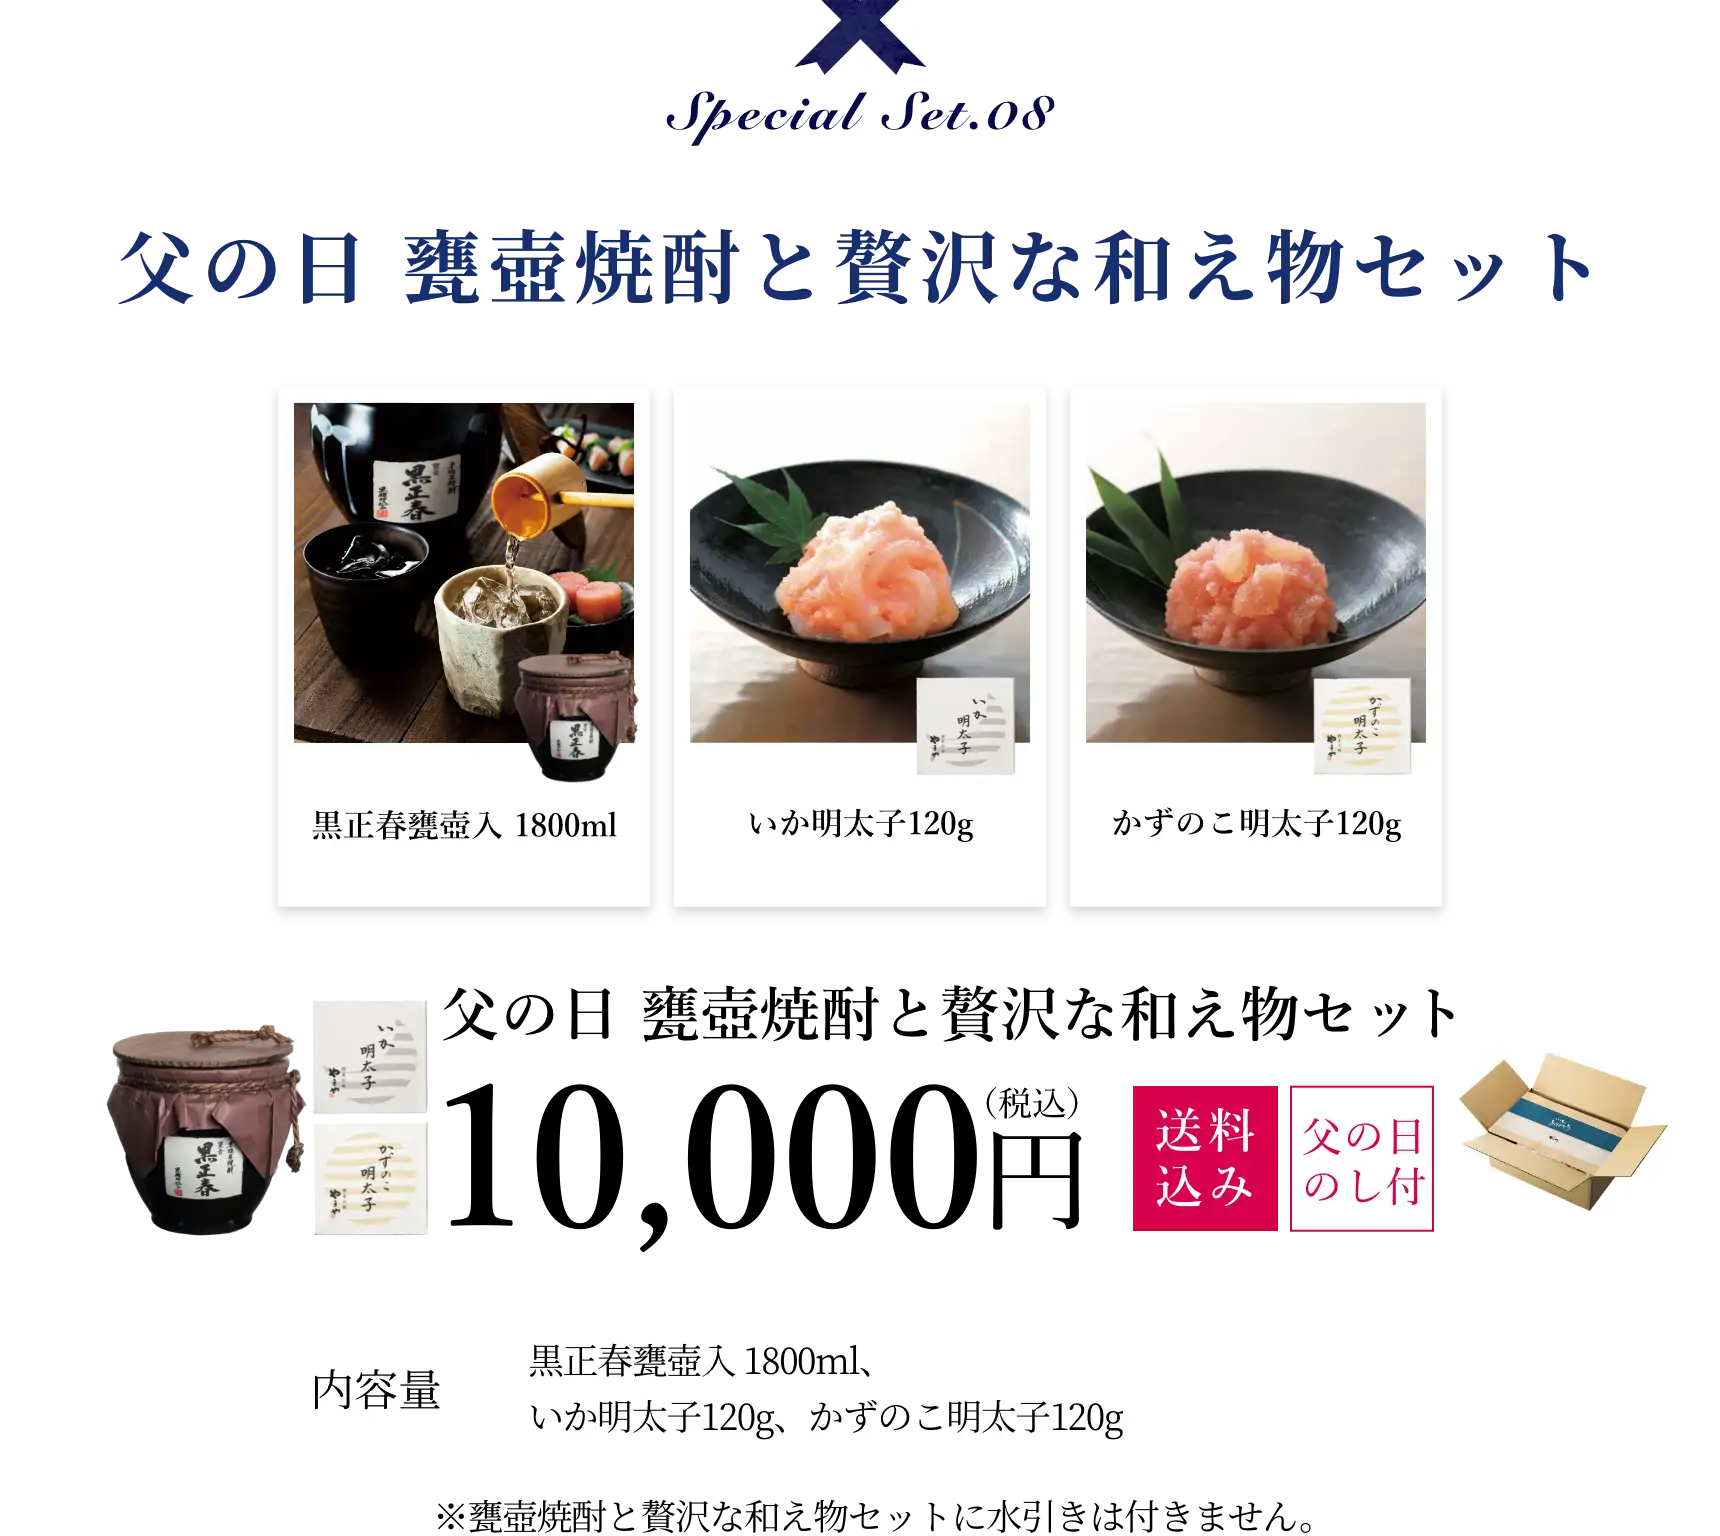 父の日 甕壷焼酎と贅沢な和え物セット 10,000円(税込/送料込み/父の日包装)